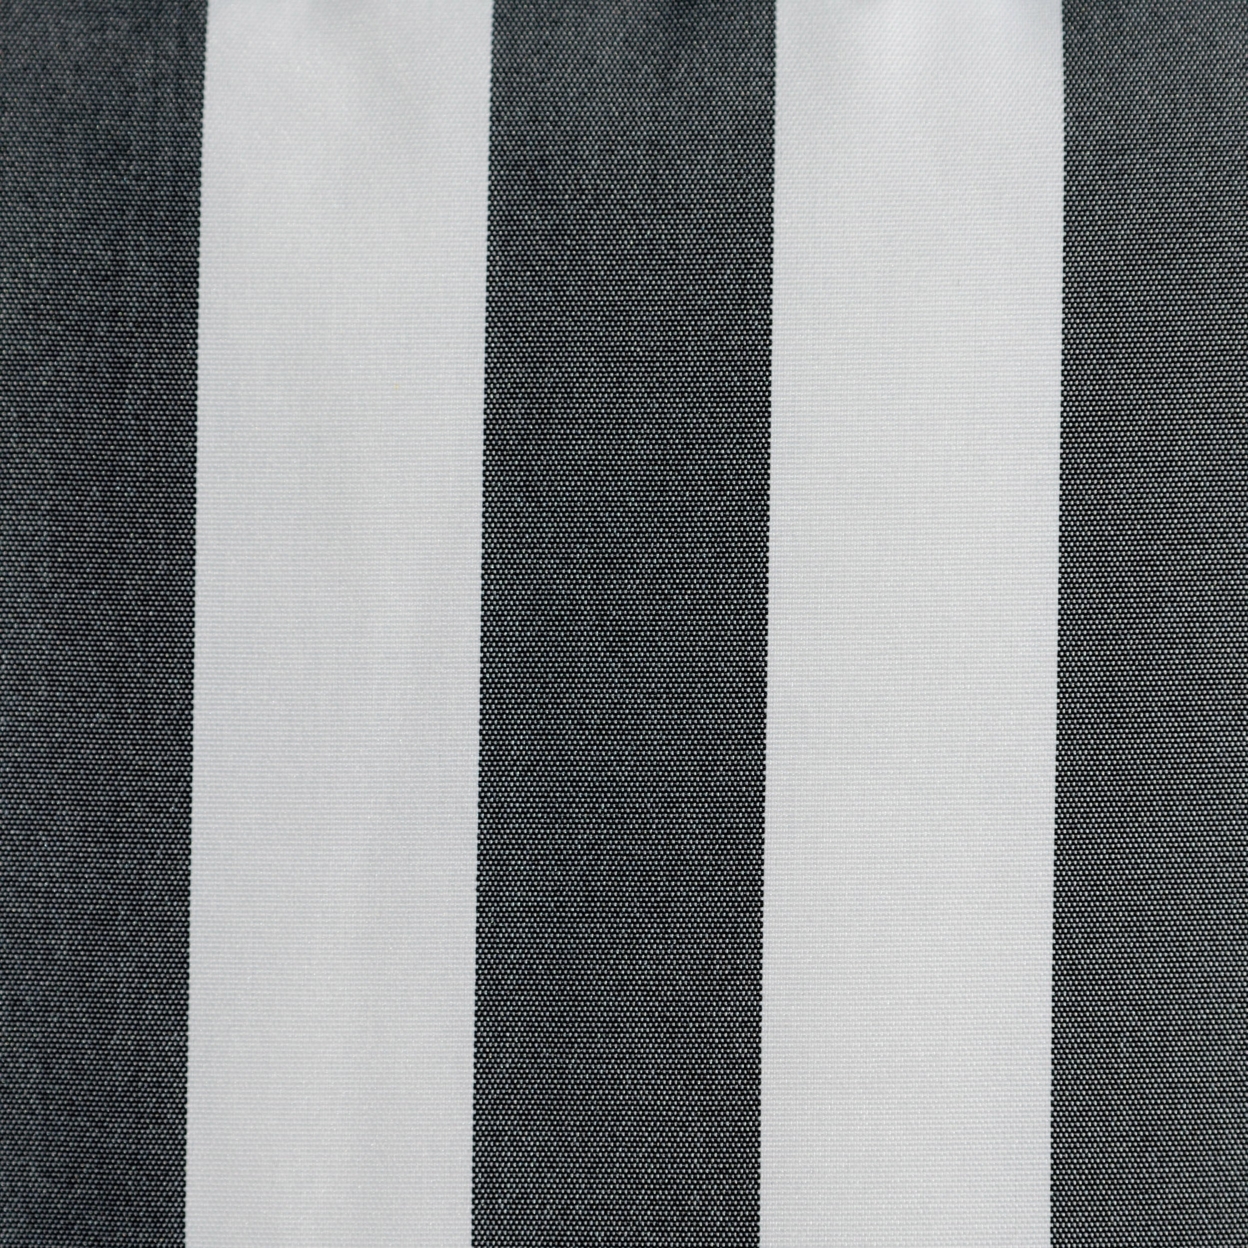 Coronado Outdoor Stripe Water Resistant Rectangular Throw Pillow - Brown/white, Single